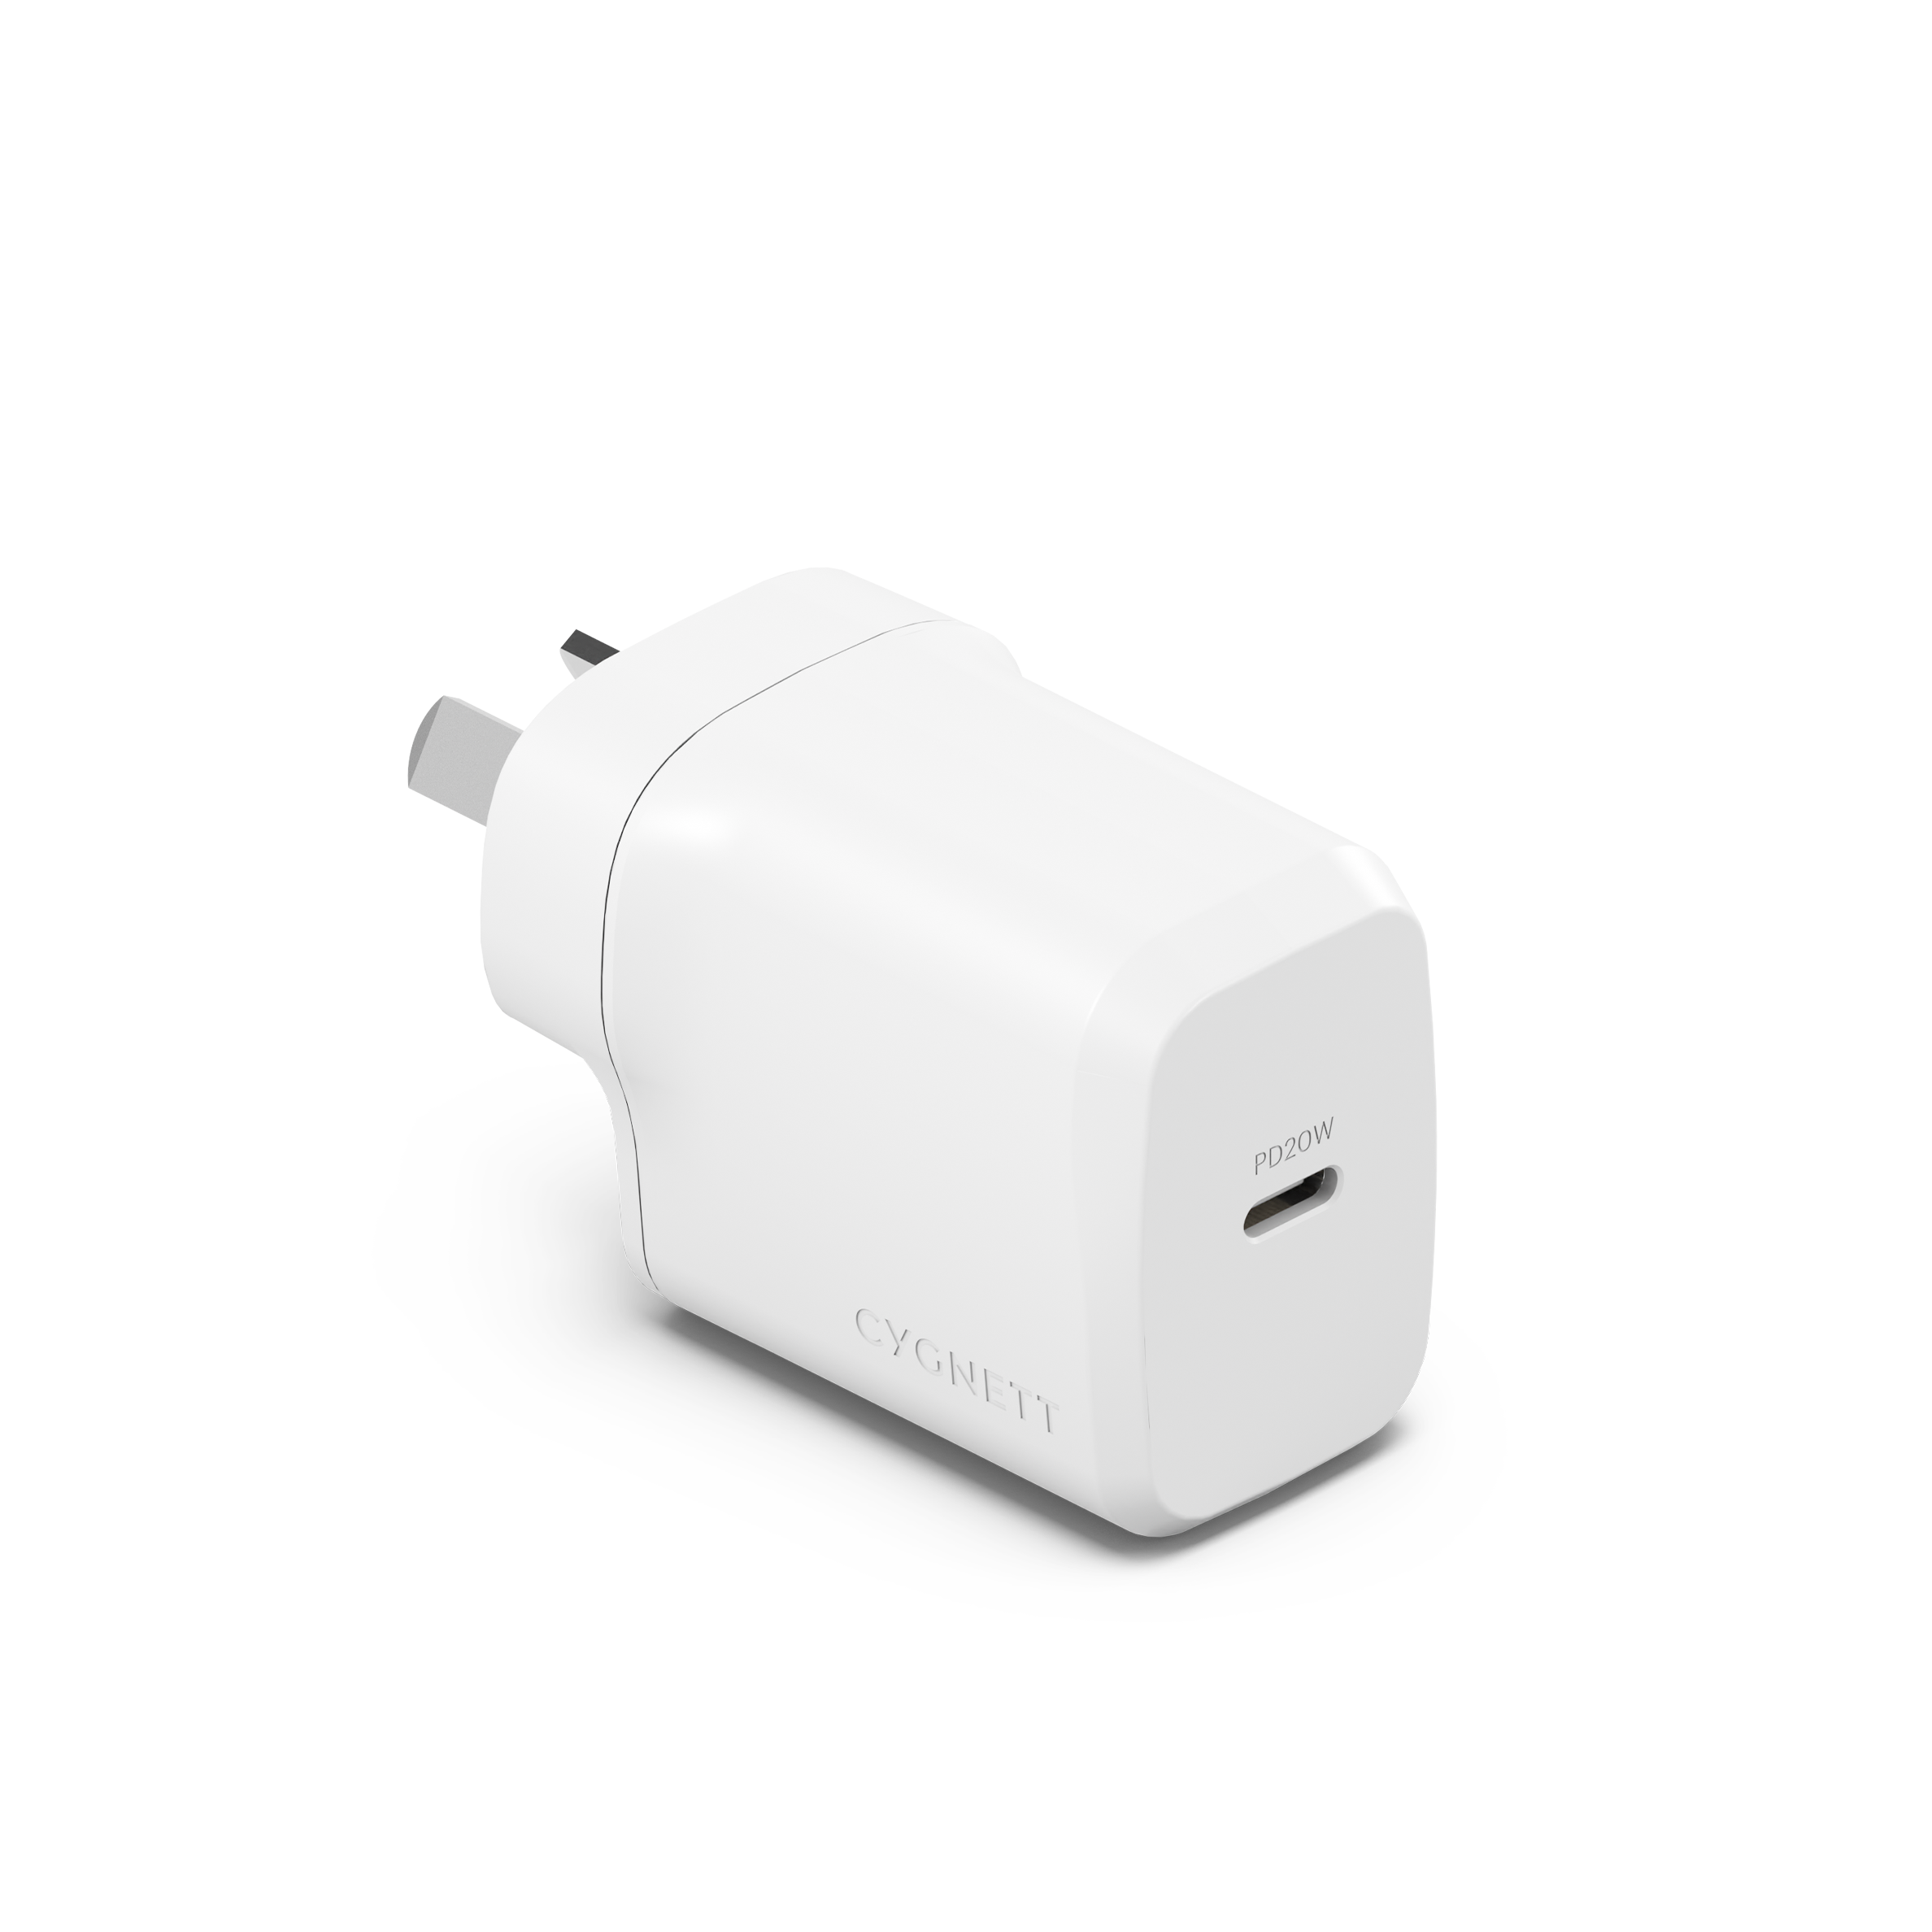 20W USB-C Wall Charger - Cygnett (AU)